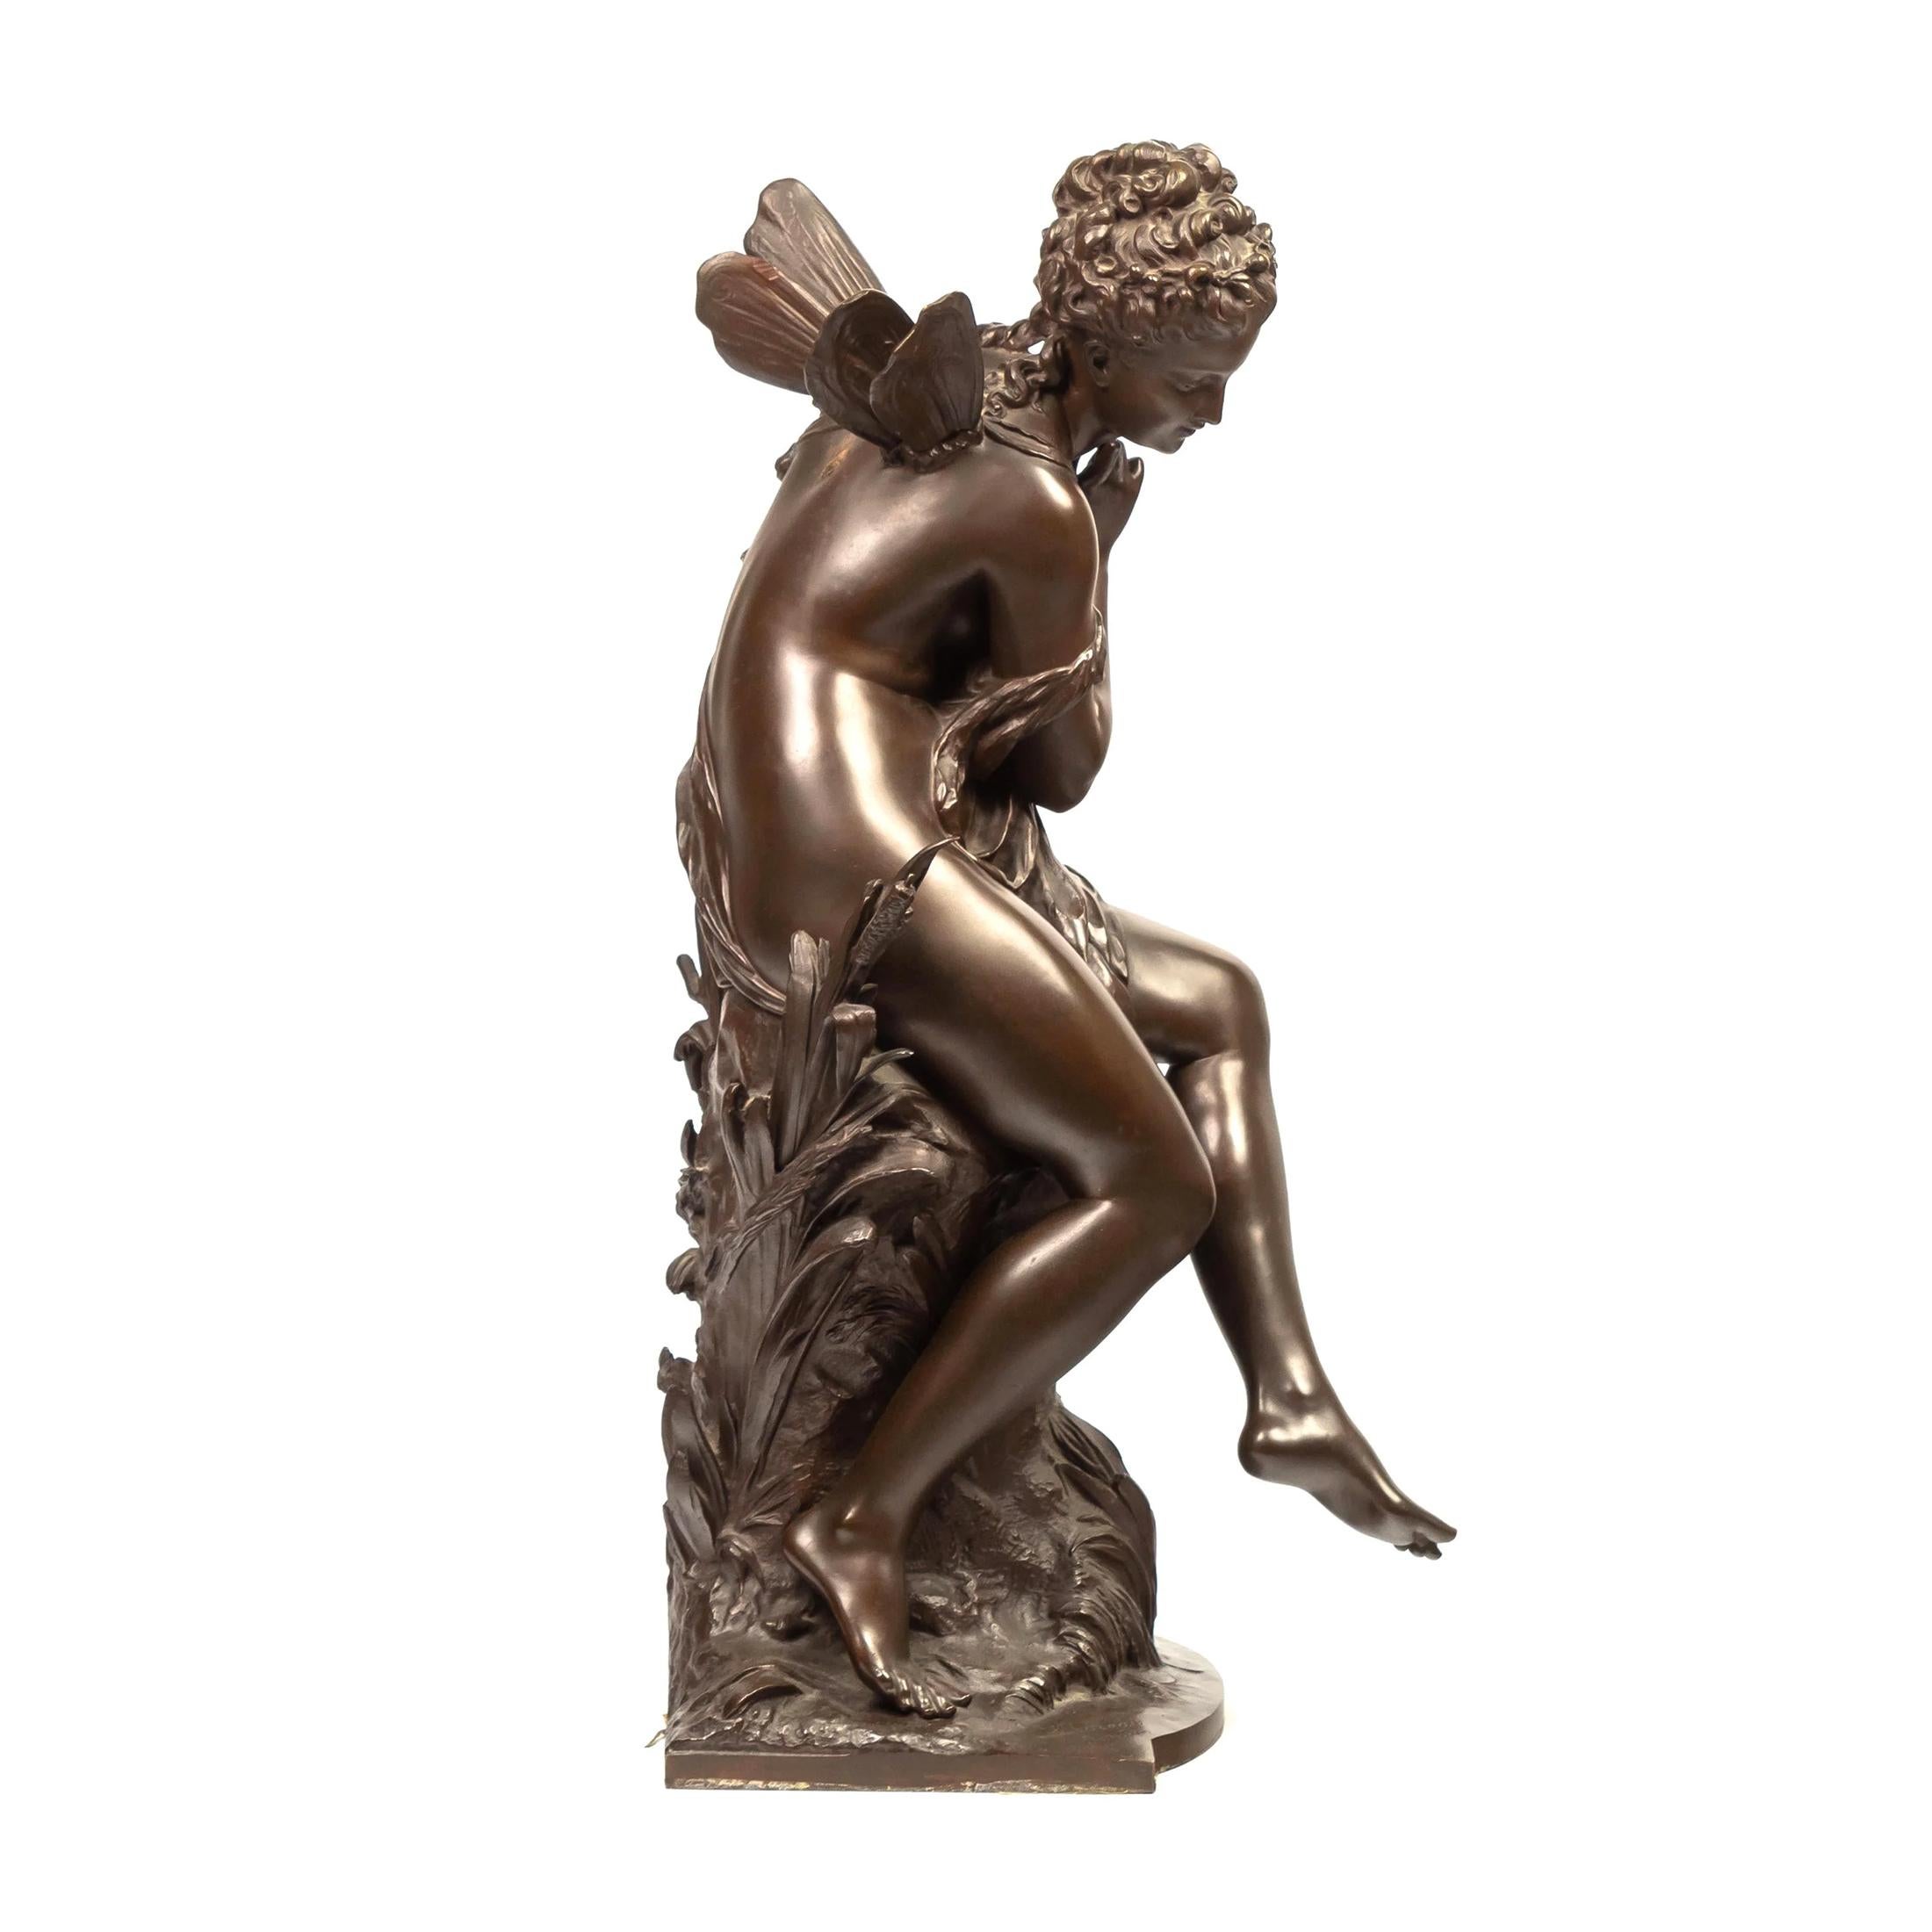 Eine hochwertige allegorische Bronzeskulptur im Jugendstil, die eine sitzende Fee mit kleinen Flügeln darstellt. Titel: 